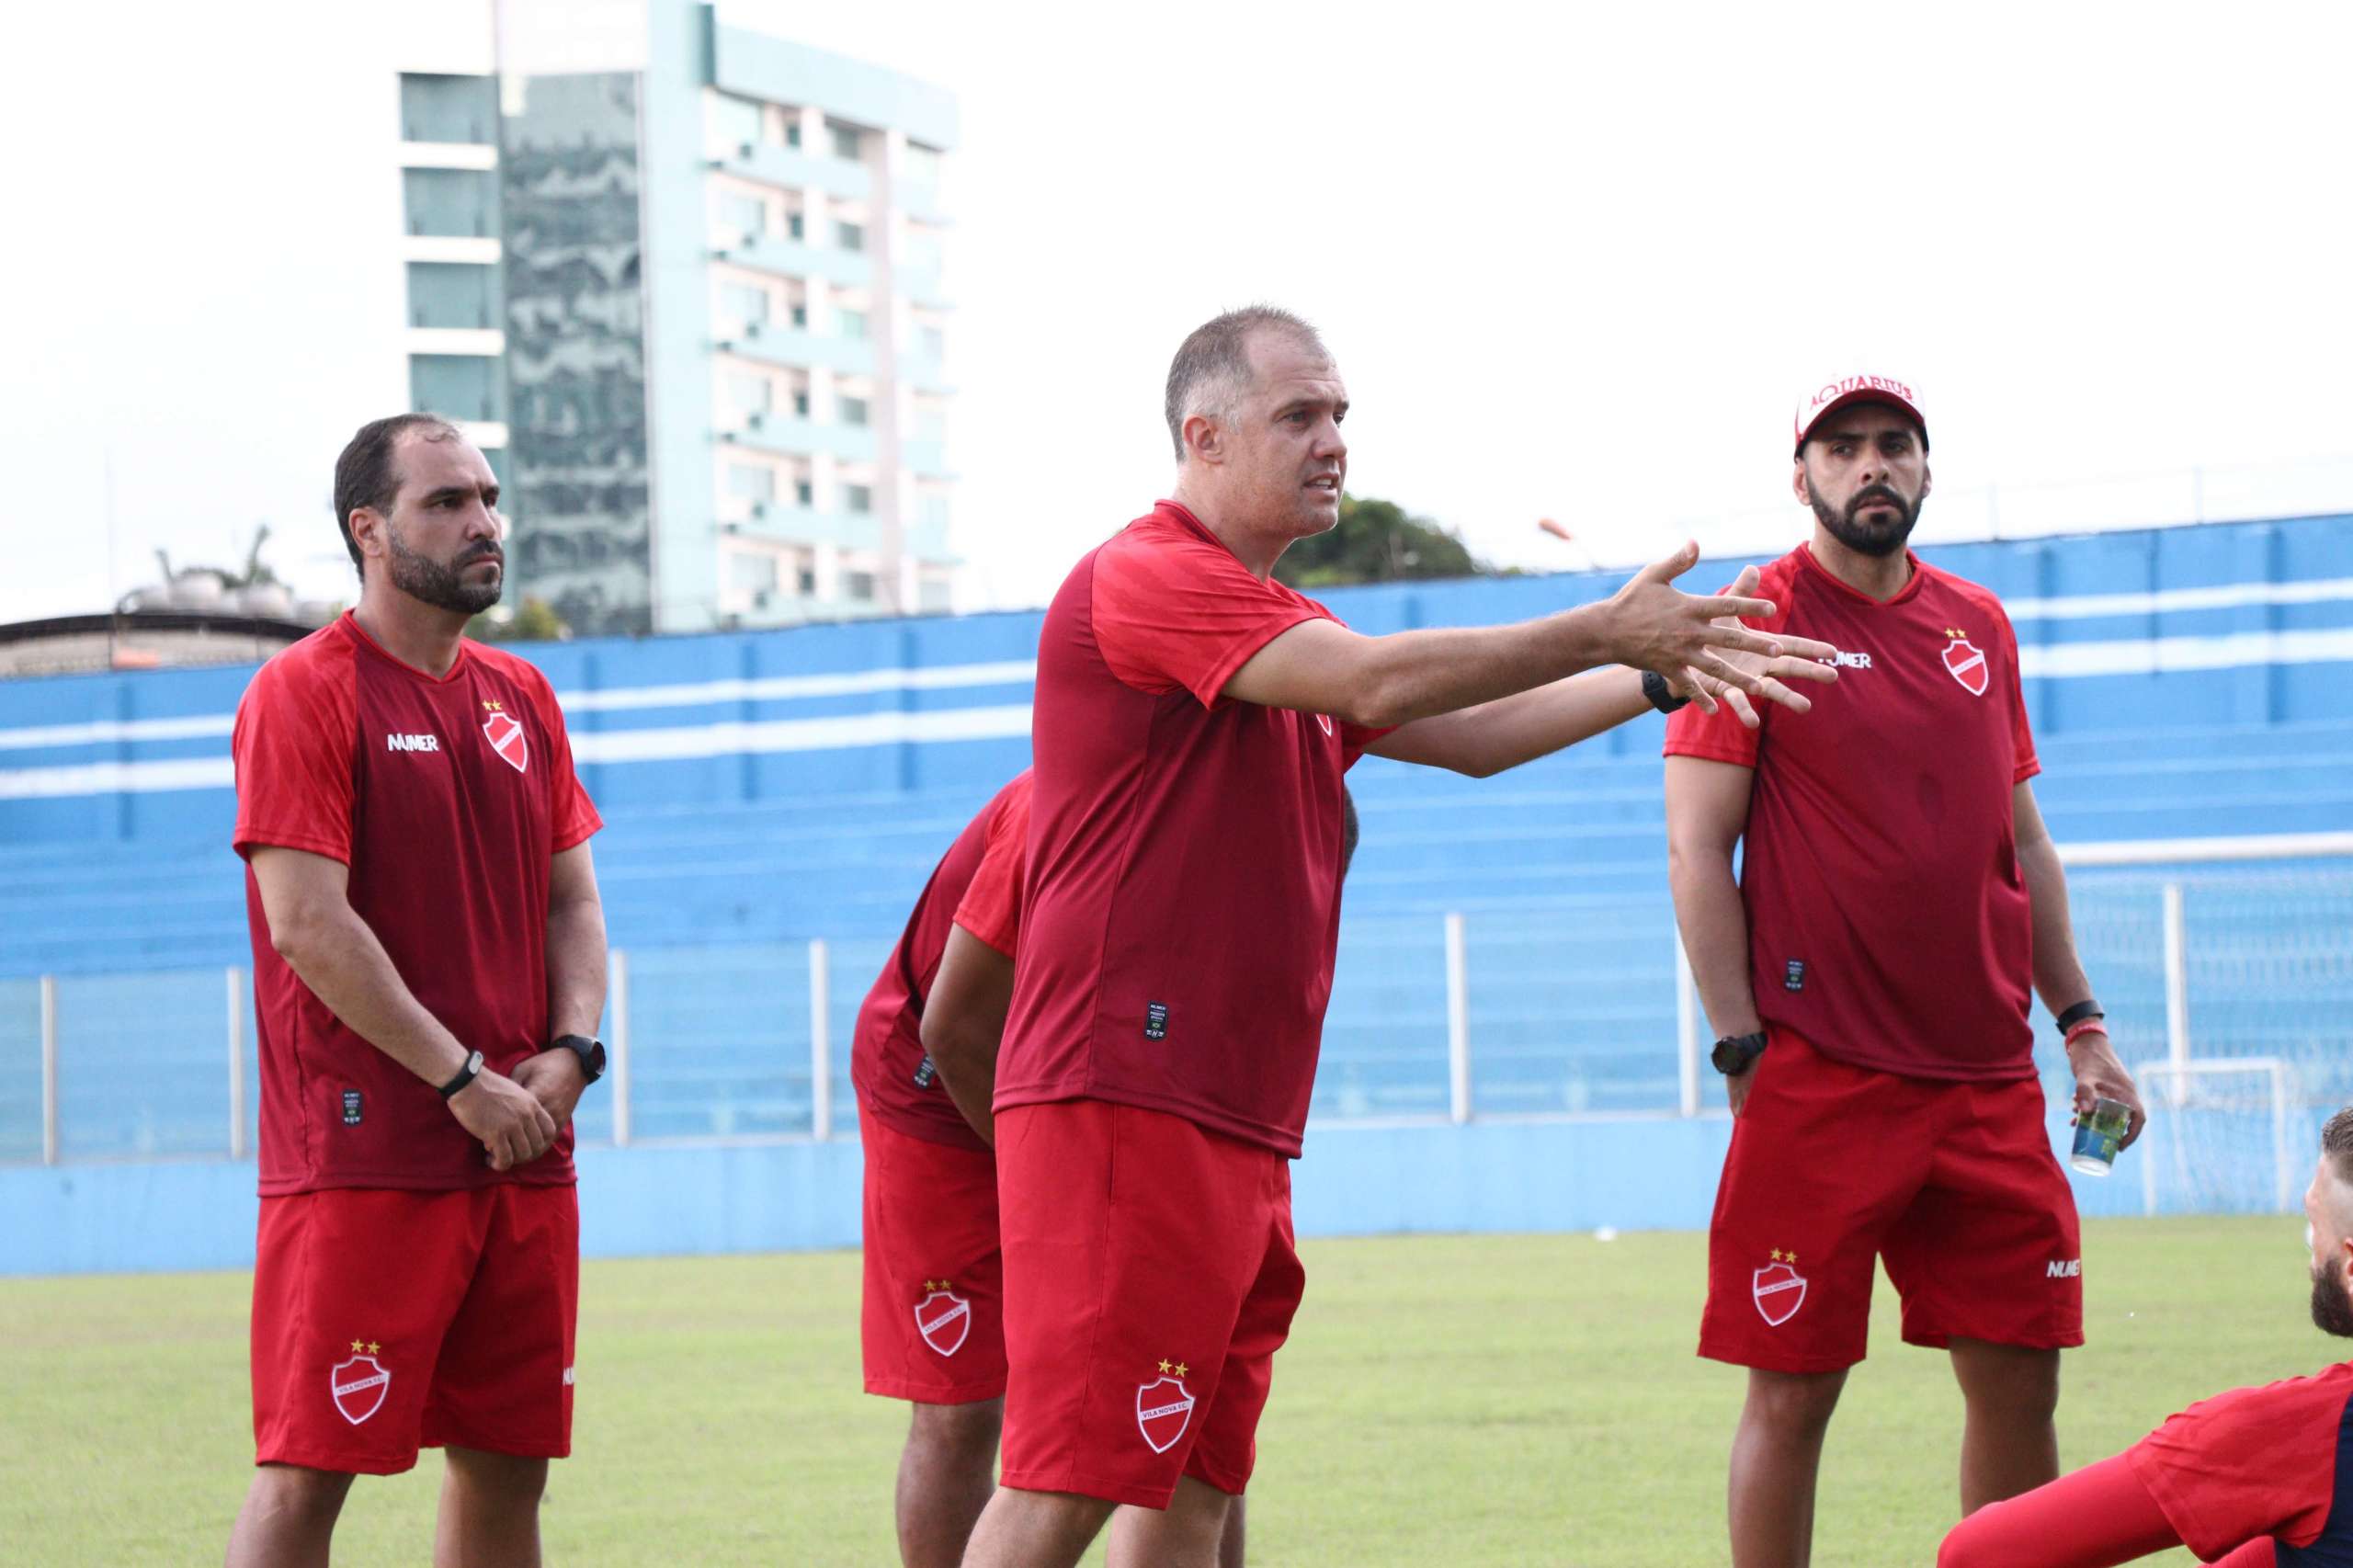 Série B: Técnico revela cobrança no Vila: “Temos que assumir as responsabilidades”